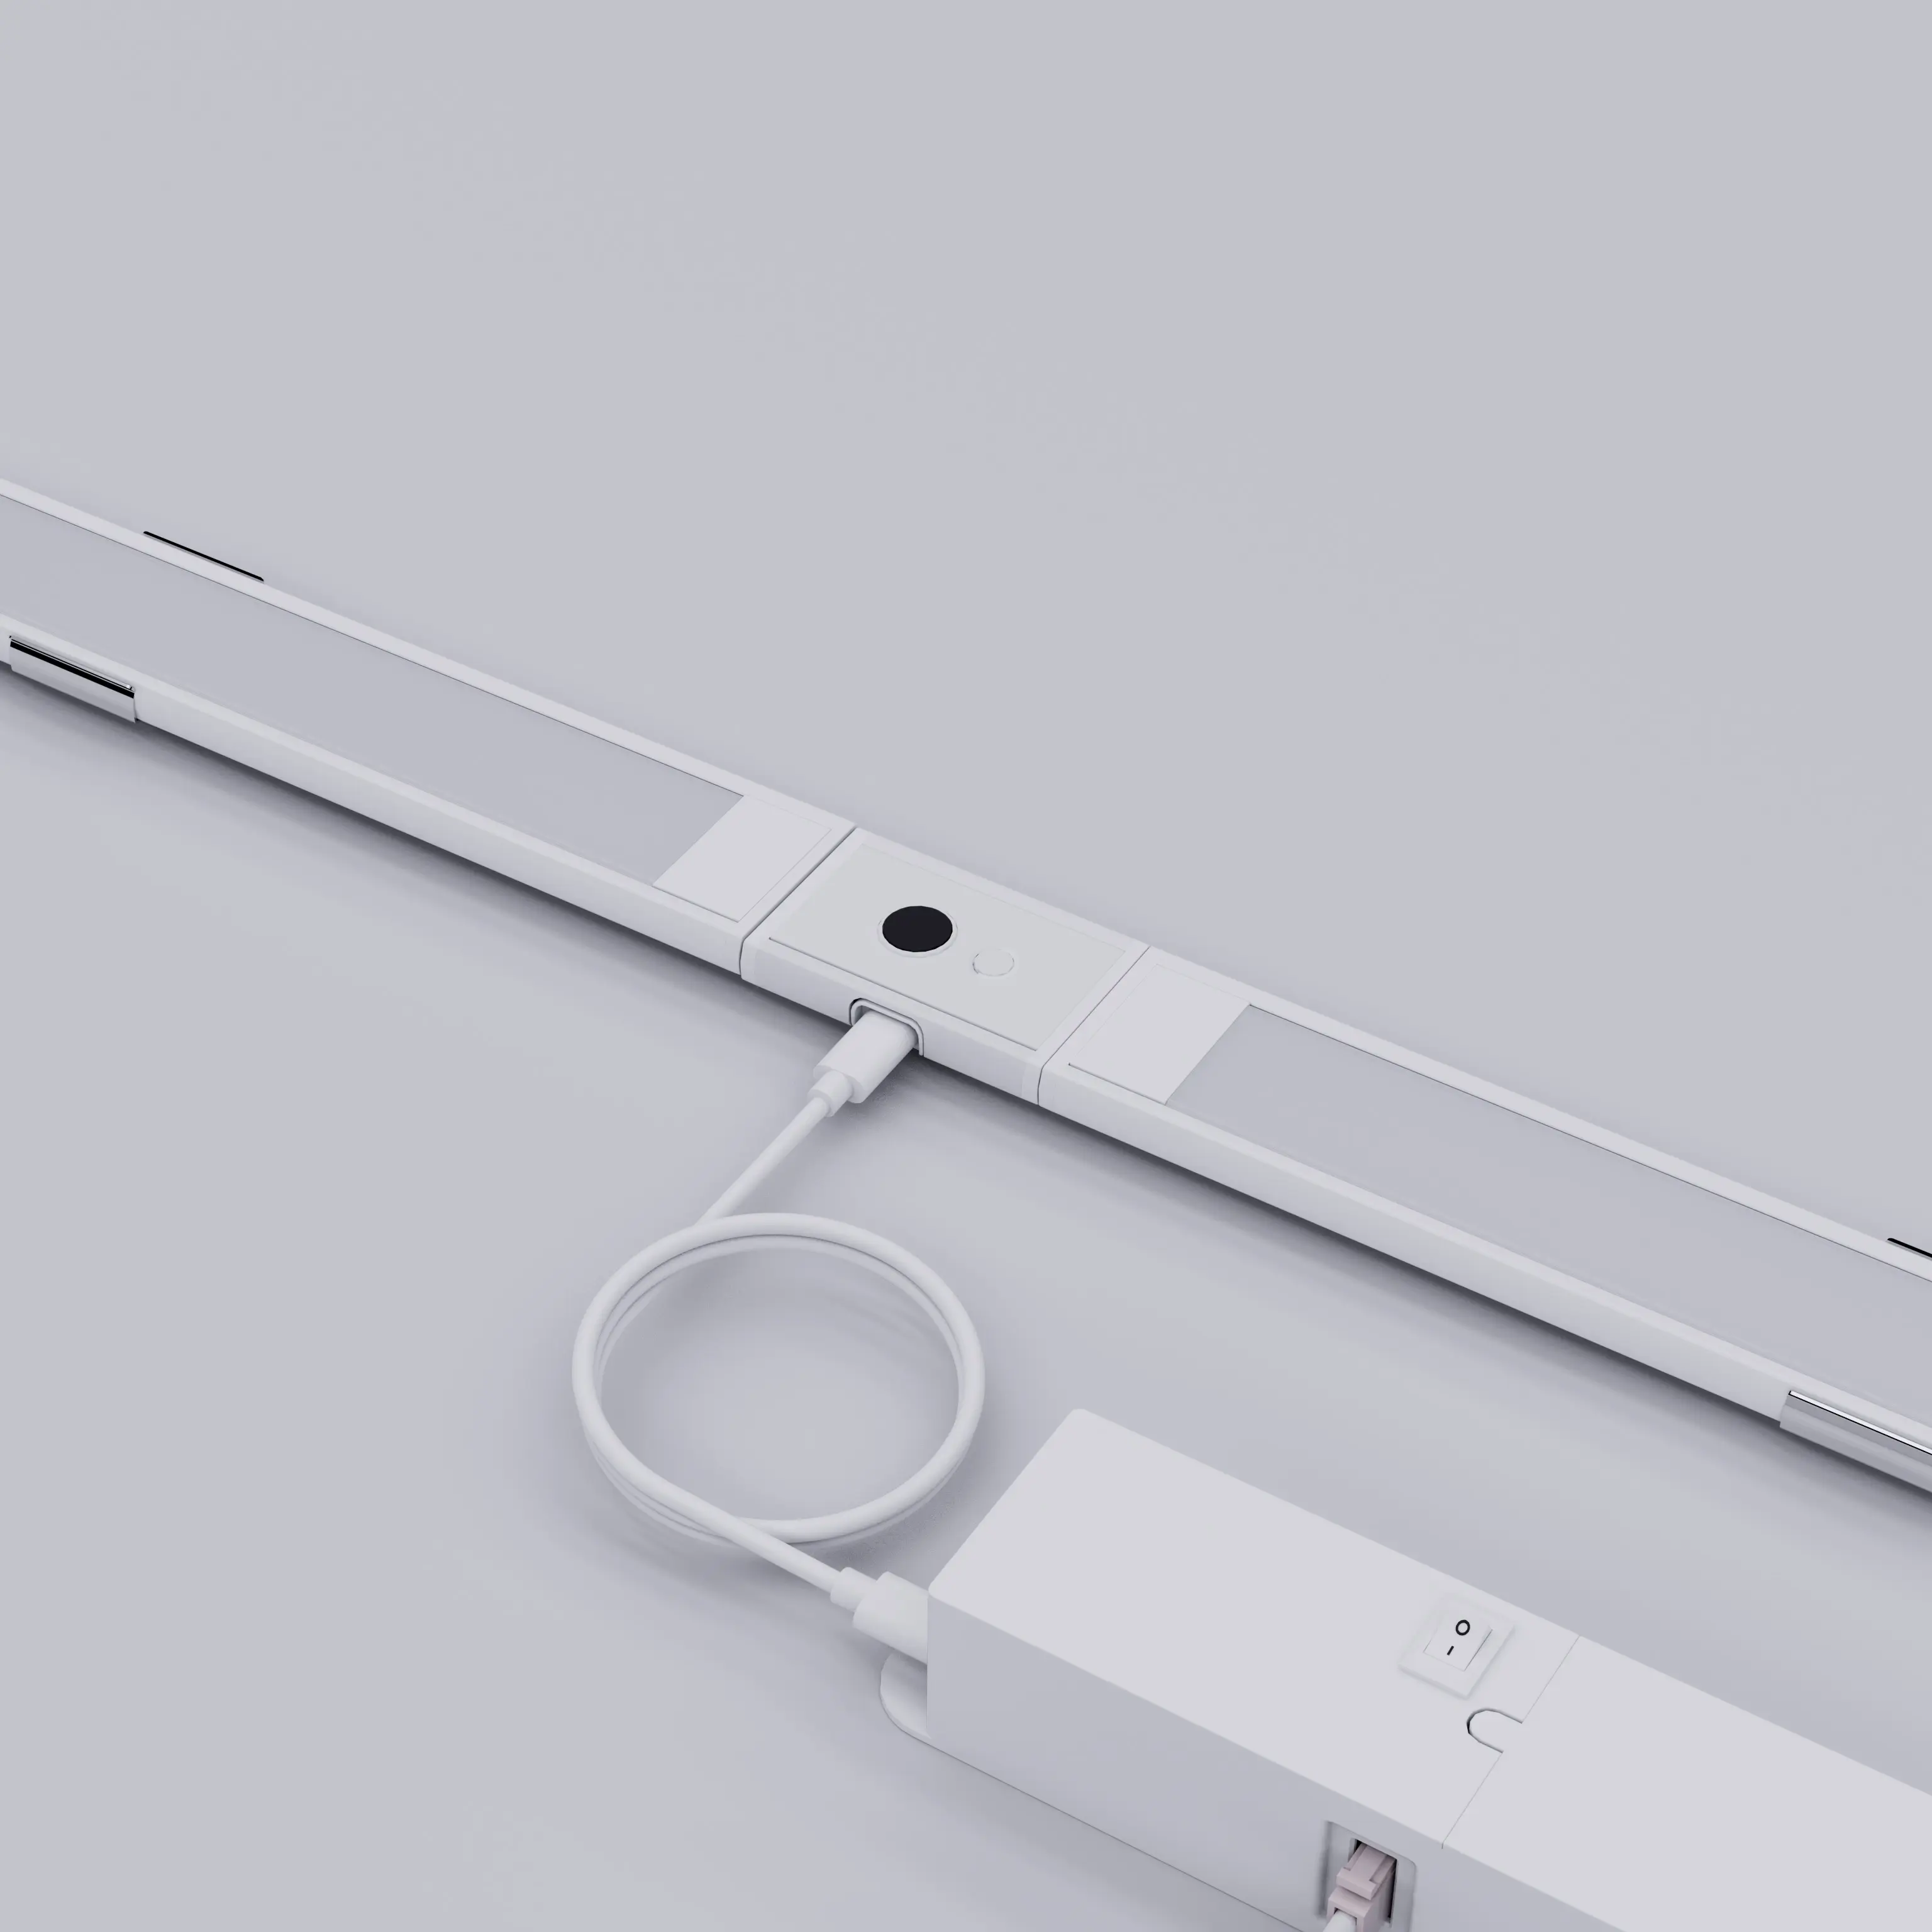 Linkable Under Cabinet Light Bar, Hand Wave Sensor Dimming Under Counter Lights for Kitchen 3PCS Kit, 12W, 960lm